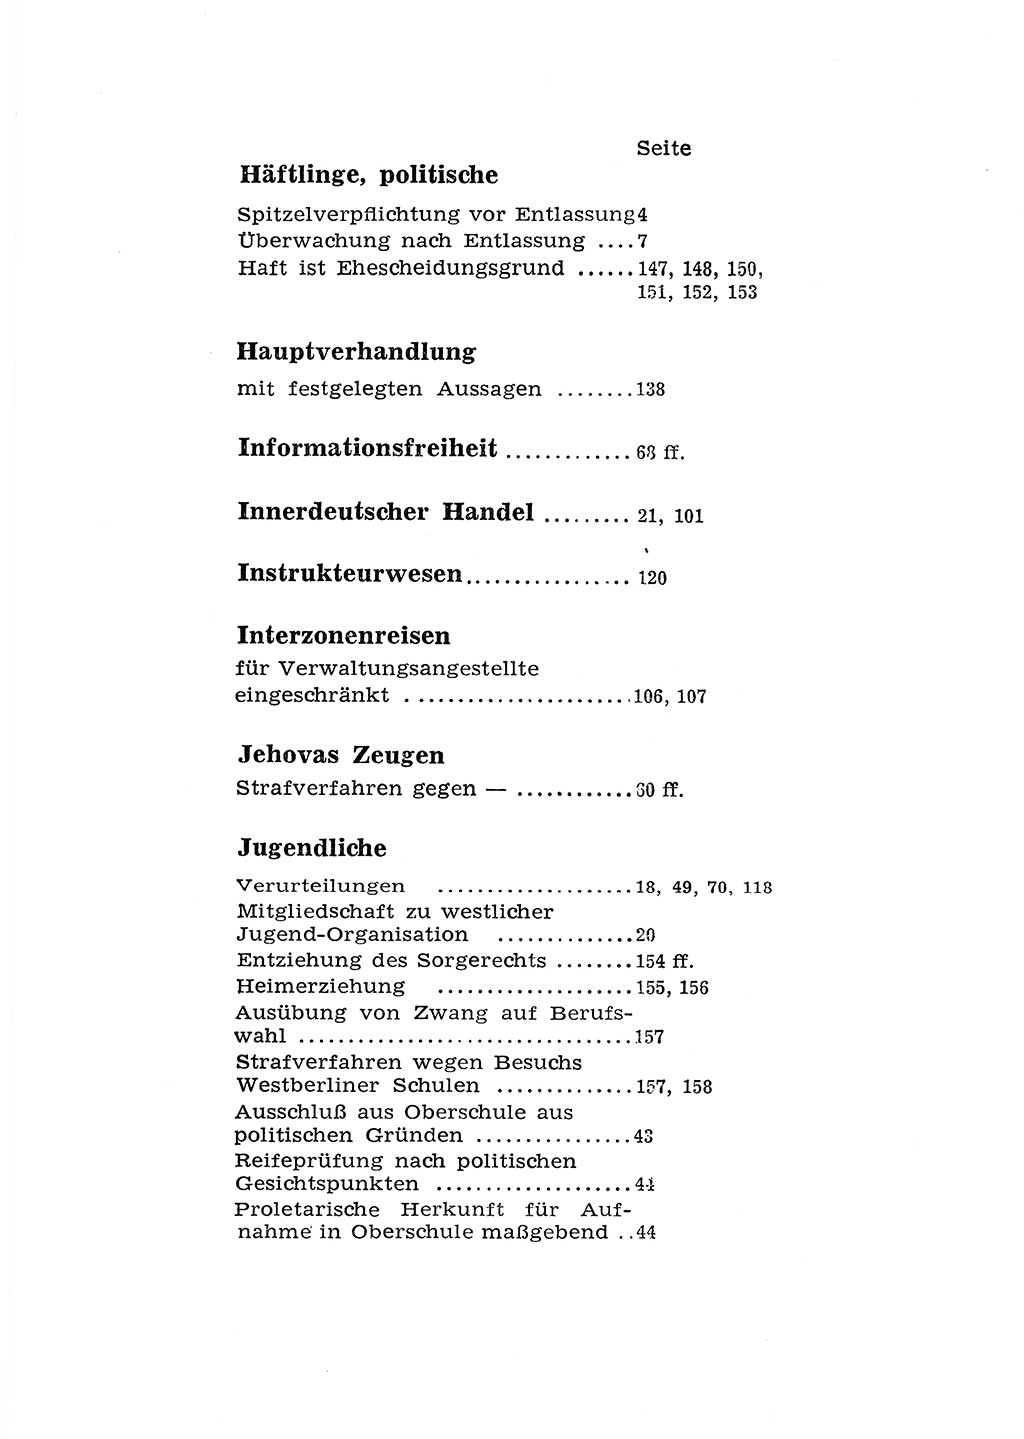 Katalog des Unrechts, Untersuchungsausschuß Freiheitlicher Juristen (UfJ) [Bundesrepublik Deutschland (BRD)] 1956, Seite 201 (Kat. UnR. UfJ BRD 1956, S. 201)